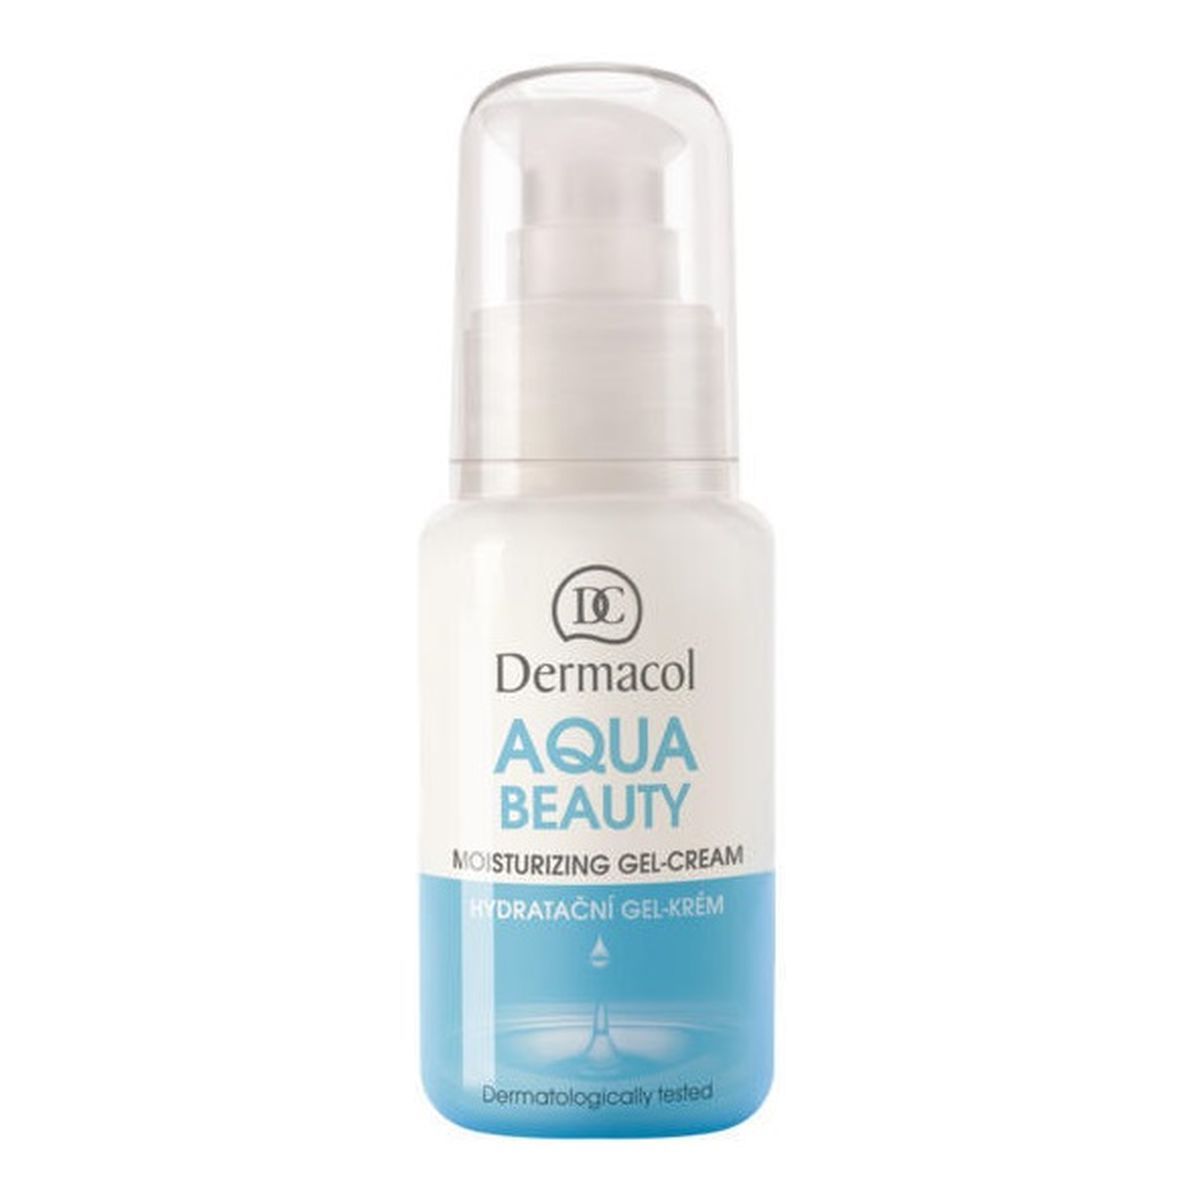 Dermacol Aqua Beauty Moisturizing Gel-Cream nawilżający Żel-krem do twarzy 50ml